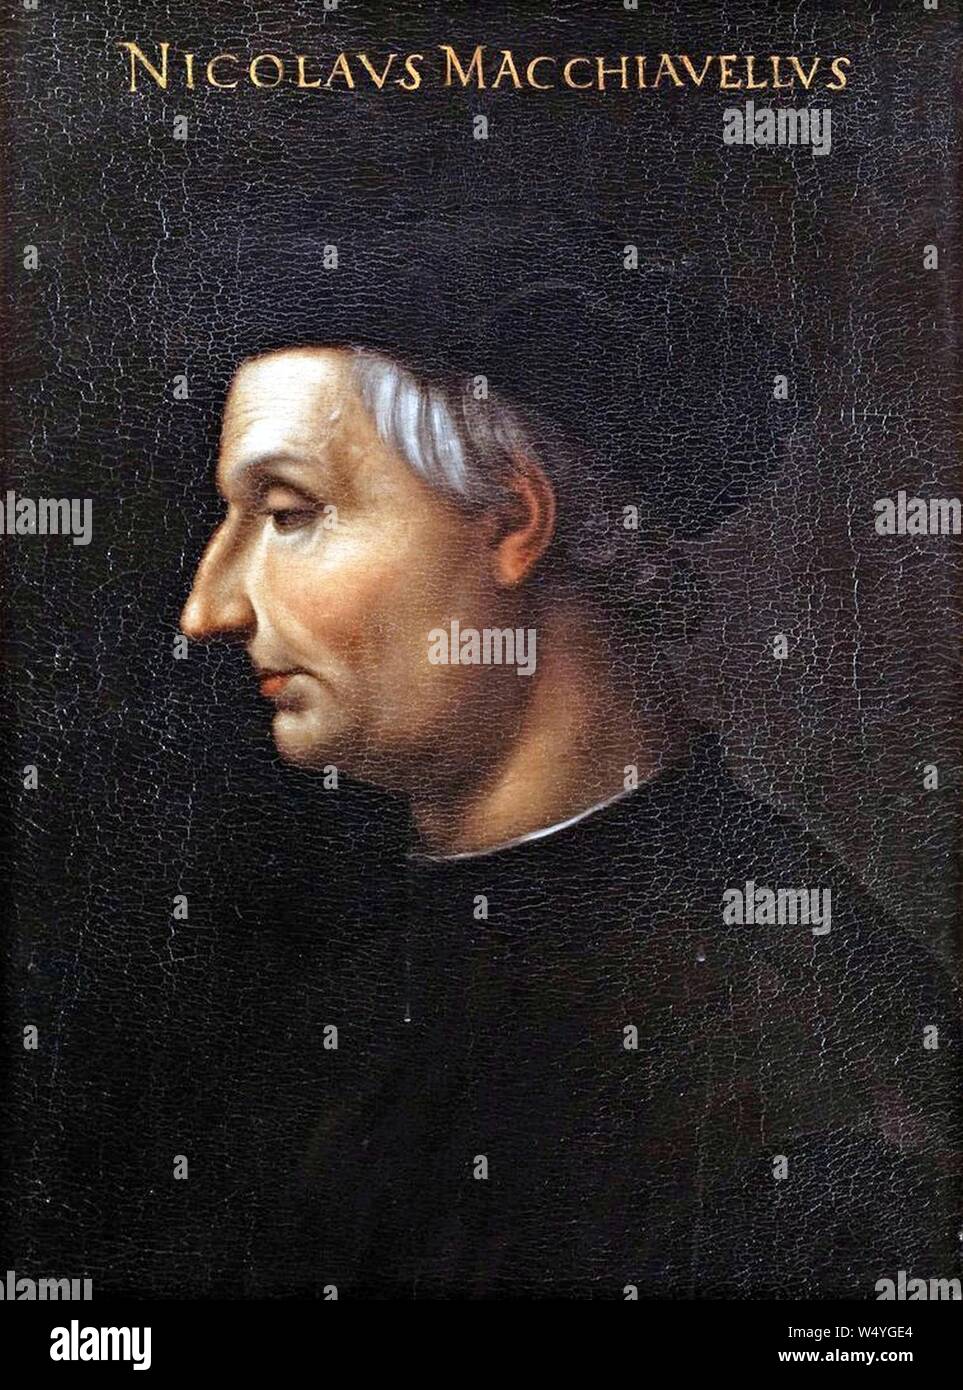 Cristofano dell'Altissimo Ritratto di Niccolò Machiavelli. Stockfoto